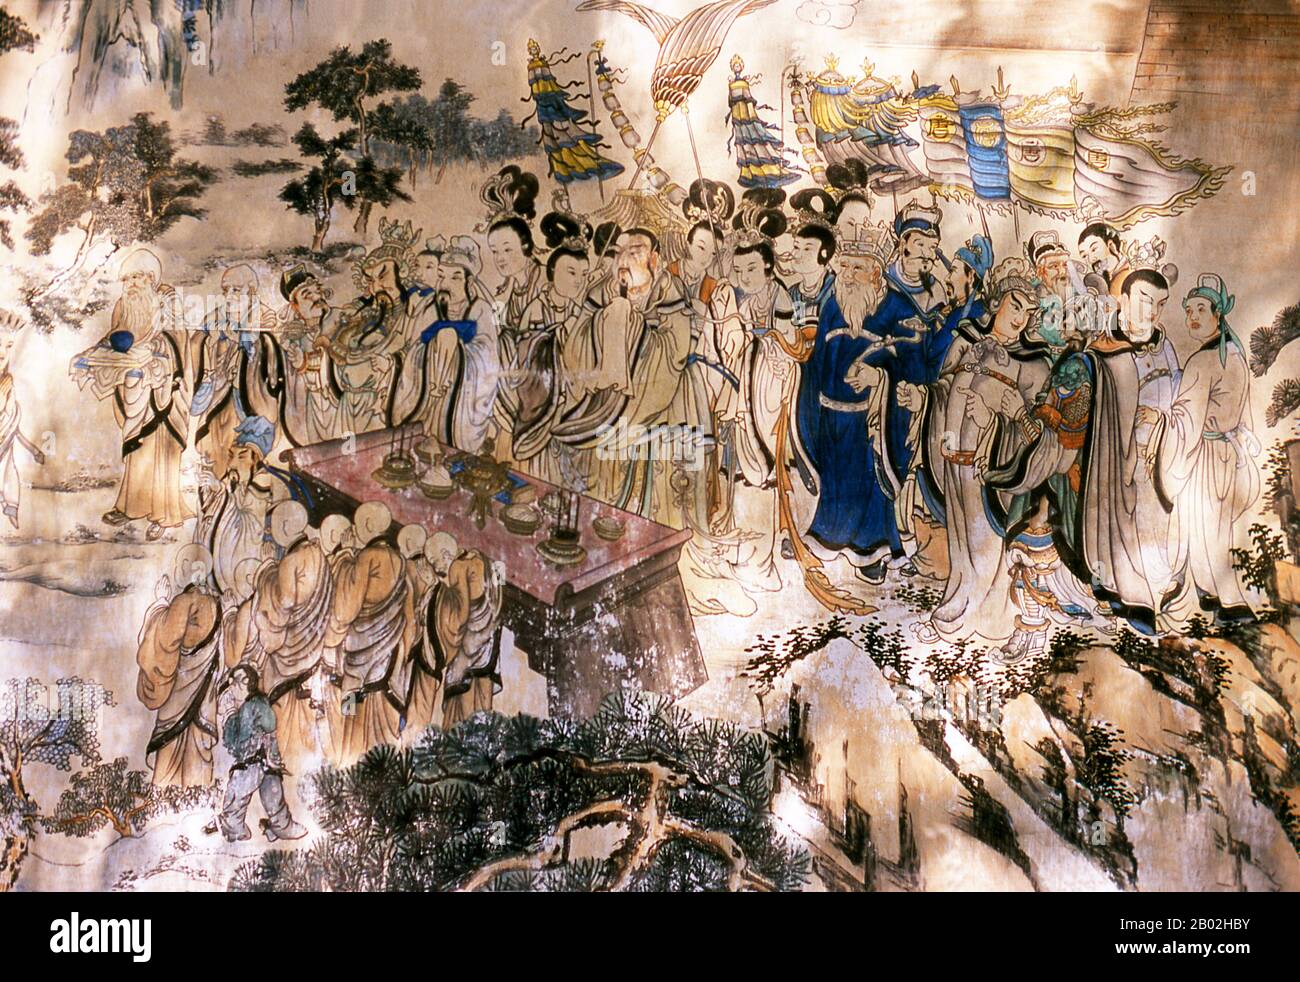 "Viaggio verso l'Occidente" è uno dei Quattro Grandi Romanzi classici della letteratura cinese. Originariamente pubblicato anonimamente nel 1590s durante la Dinastia Ming, la sua paternità è stata attribuita allo studioso Wu Cheng'en dal 20th secolo. Nei paesi di lingua inglese, il racconto è anche spesso conosciuto semplicemente come Scimmia. Il romanzo è un racconto fictionalizzato del leggendario pellegrinaggio in India del monaco buddista Xuanzang. Il monaco viaggiò nelle regioni occidentali durante la dinastia Tang, per ottenere testi sacri (sūtras). Il Bodhisattva Guan Yin, su istruzione del Buddha, dà questo compito Foto Stock